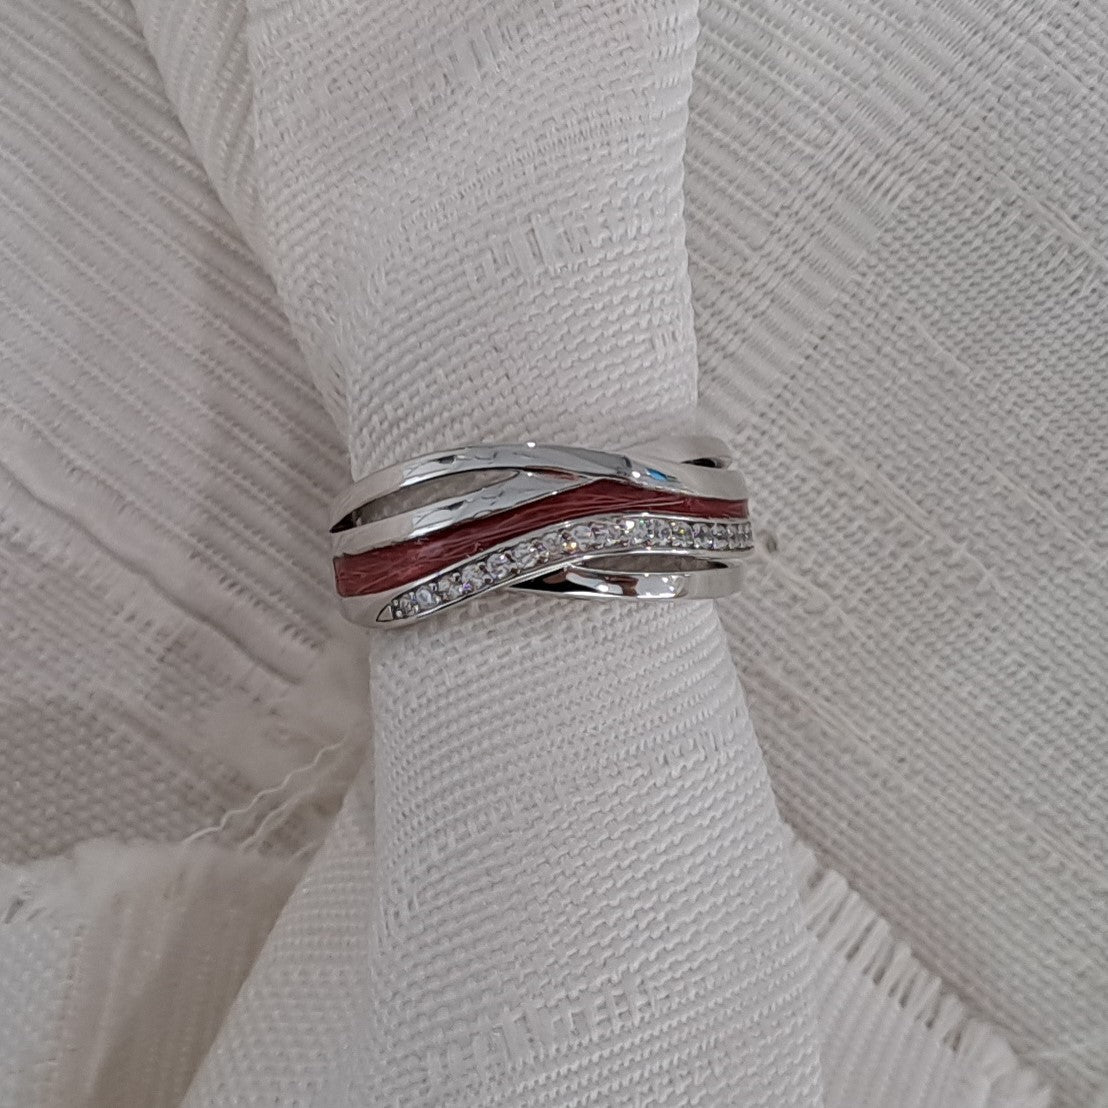 Gedenksieraad, creatieve ring 8 mm waar aan de bovenzijde zichtbaar as of haar verwerkt wordt in een deel van de ringband, een andere band is gezet met zirkonia's of diamanten naar keuze.  alle